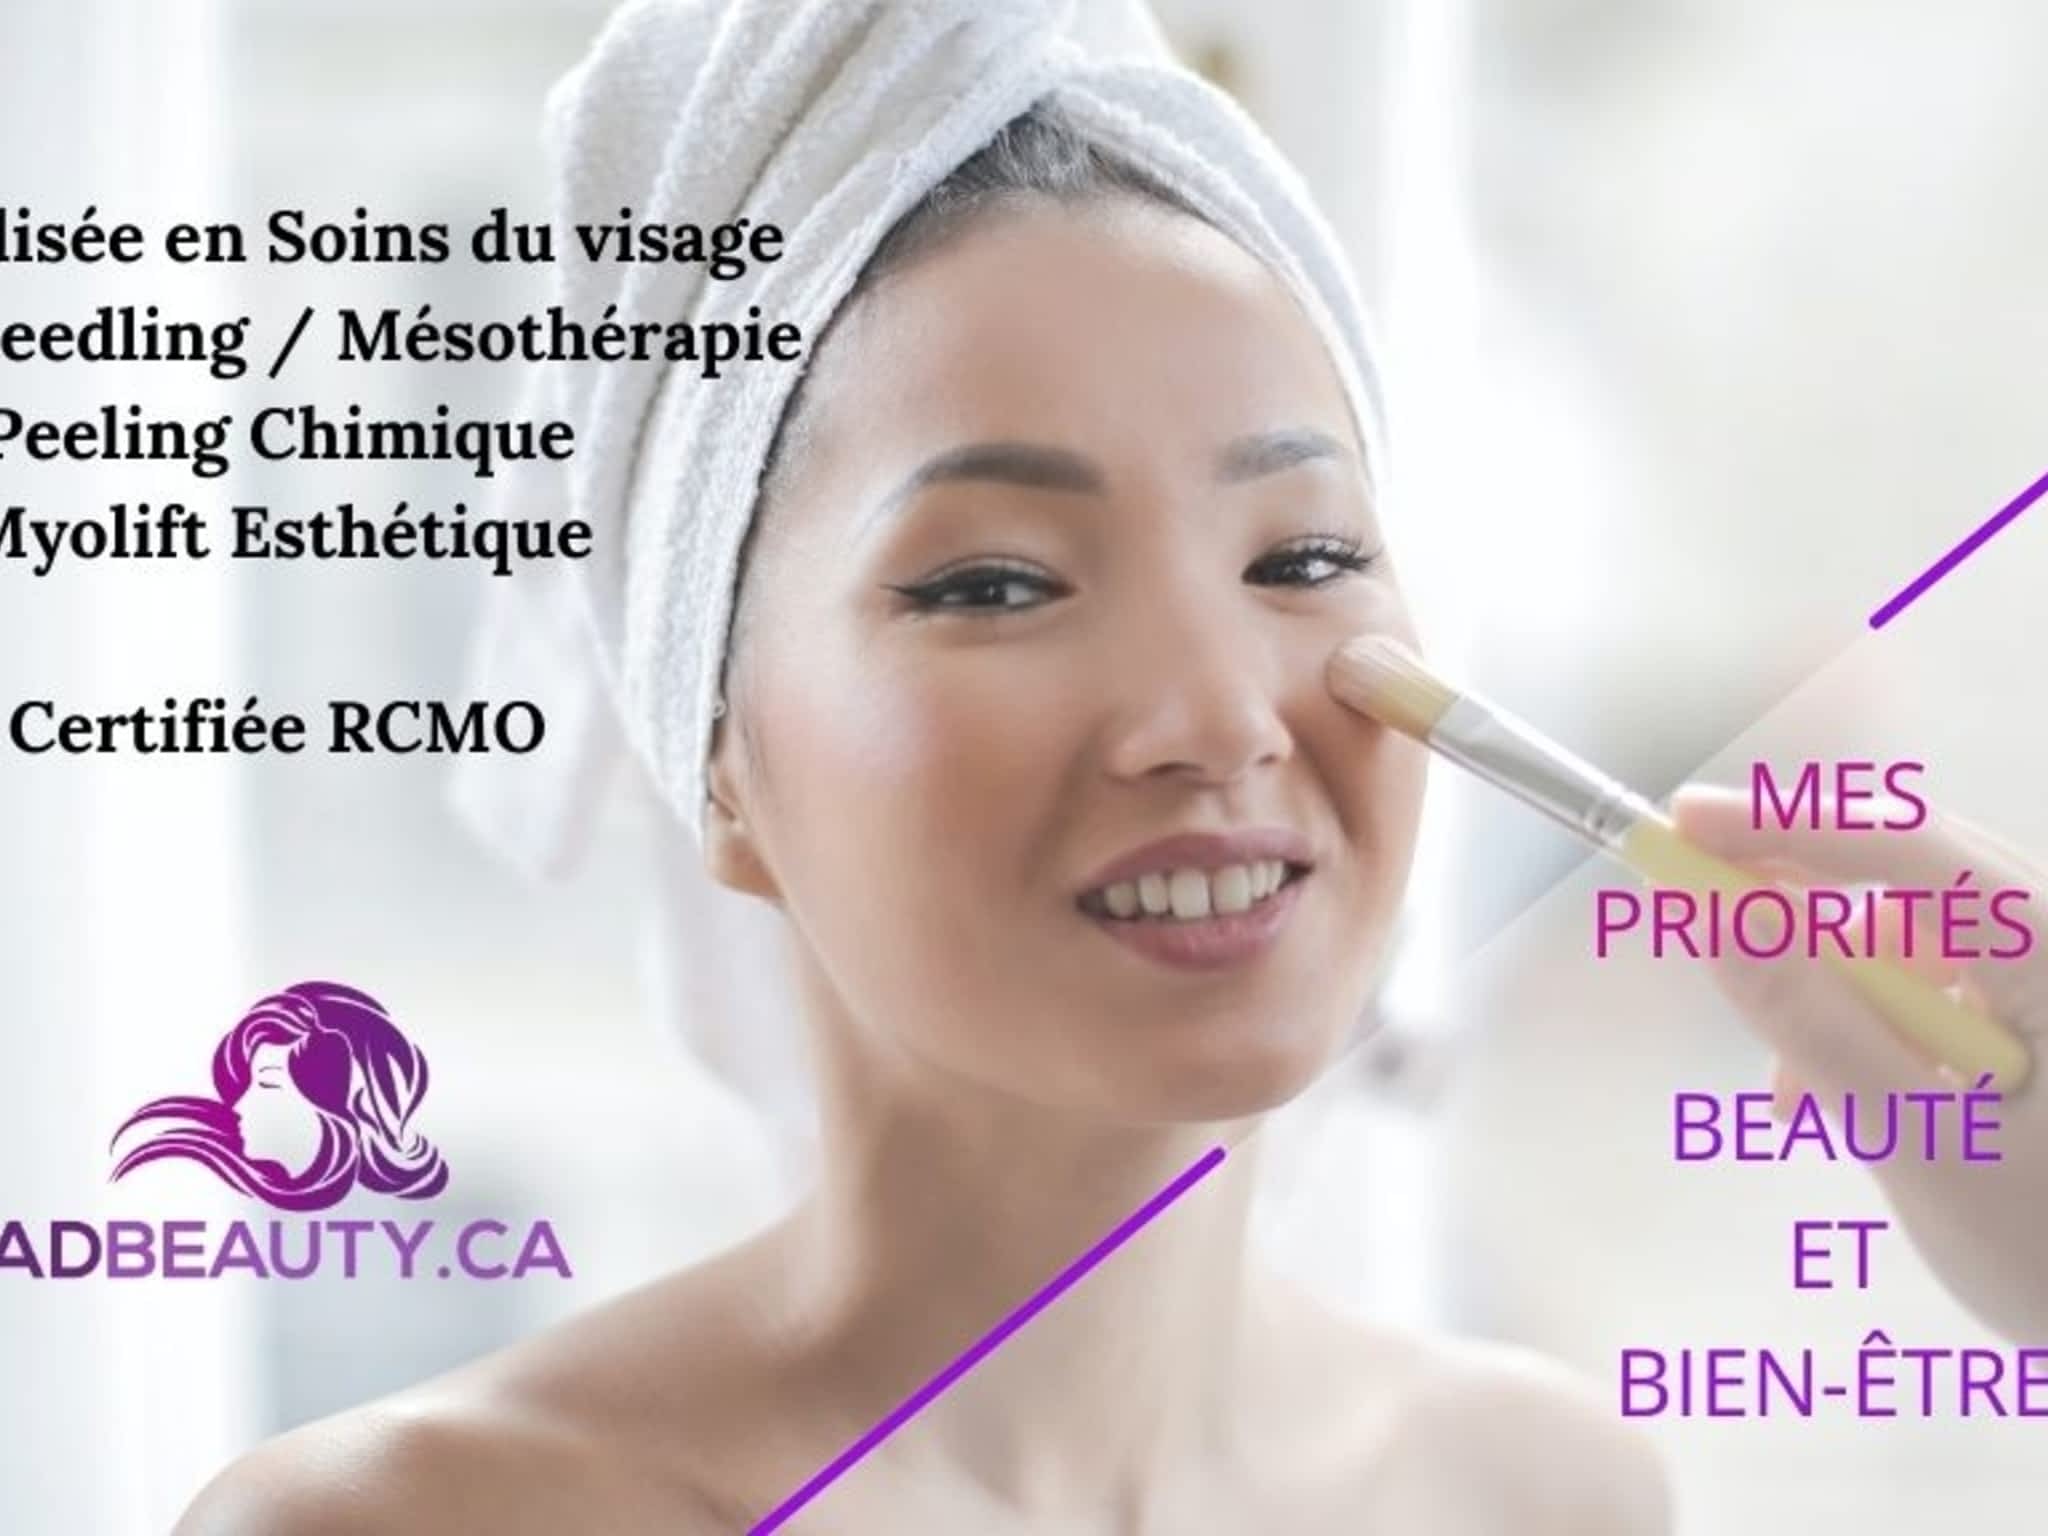 photo ADBeauty.ca Esthétique - Dermo-Esthéticienne Spécialiste en soin visage